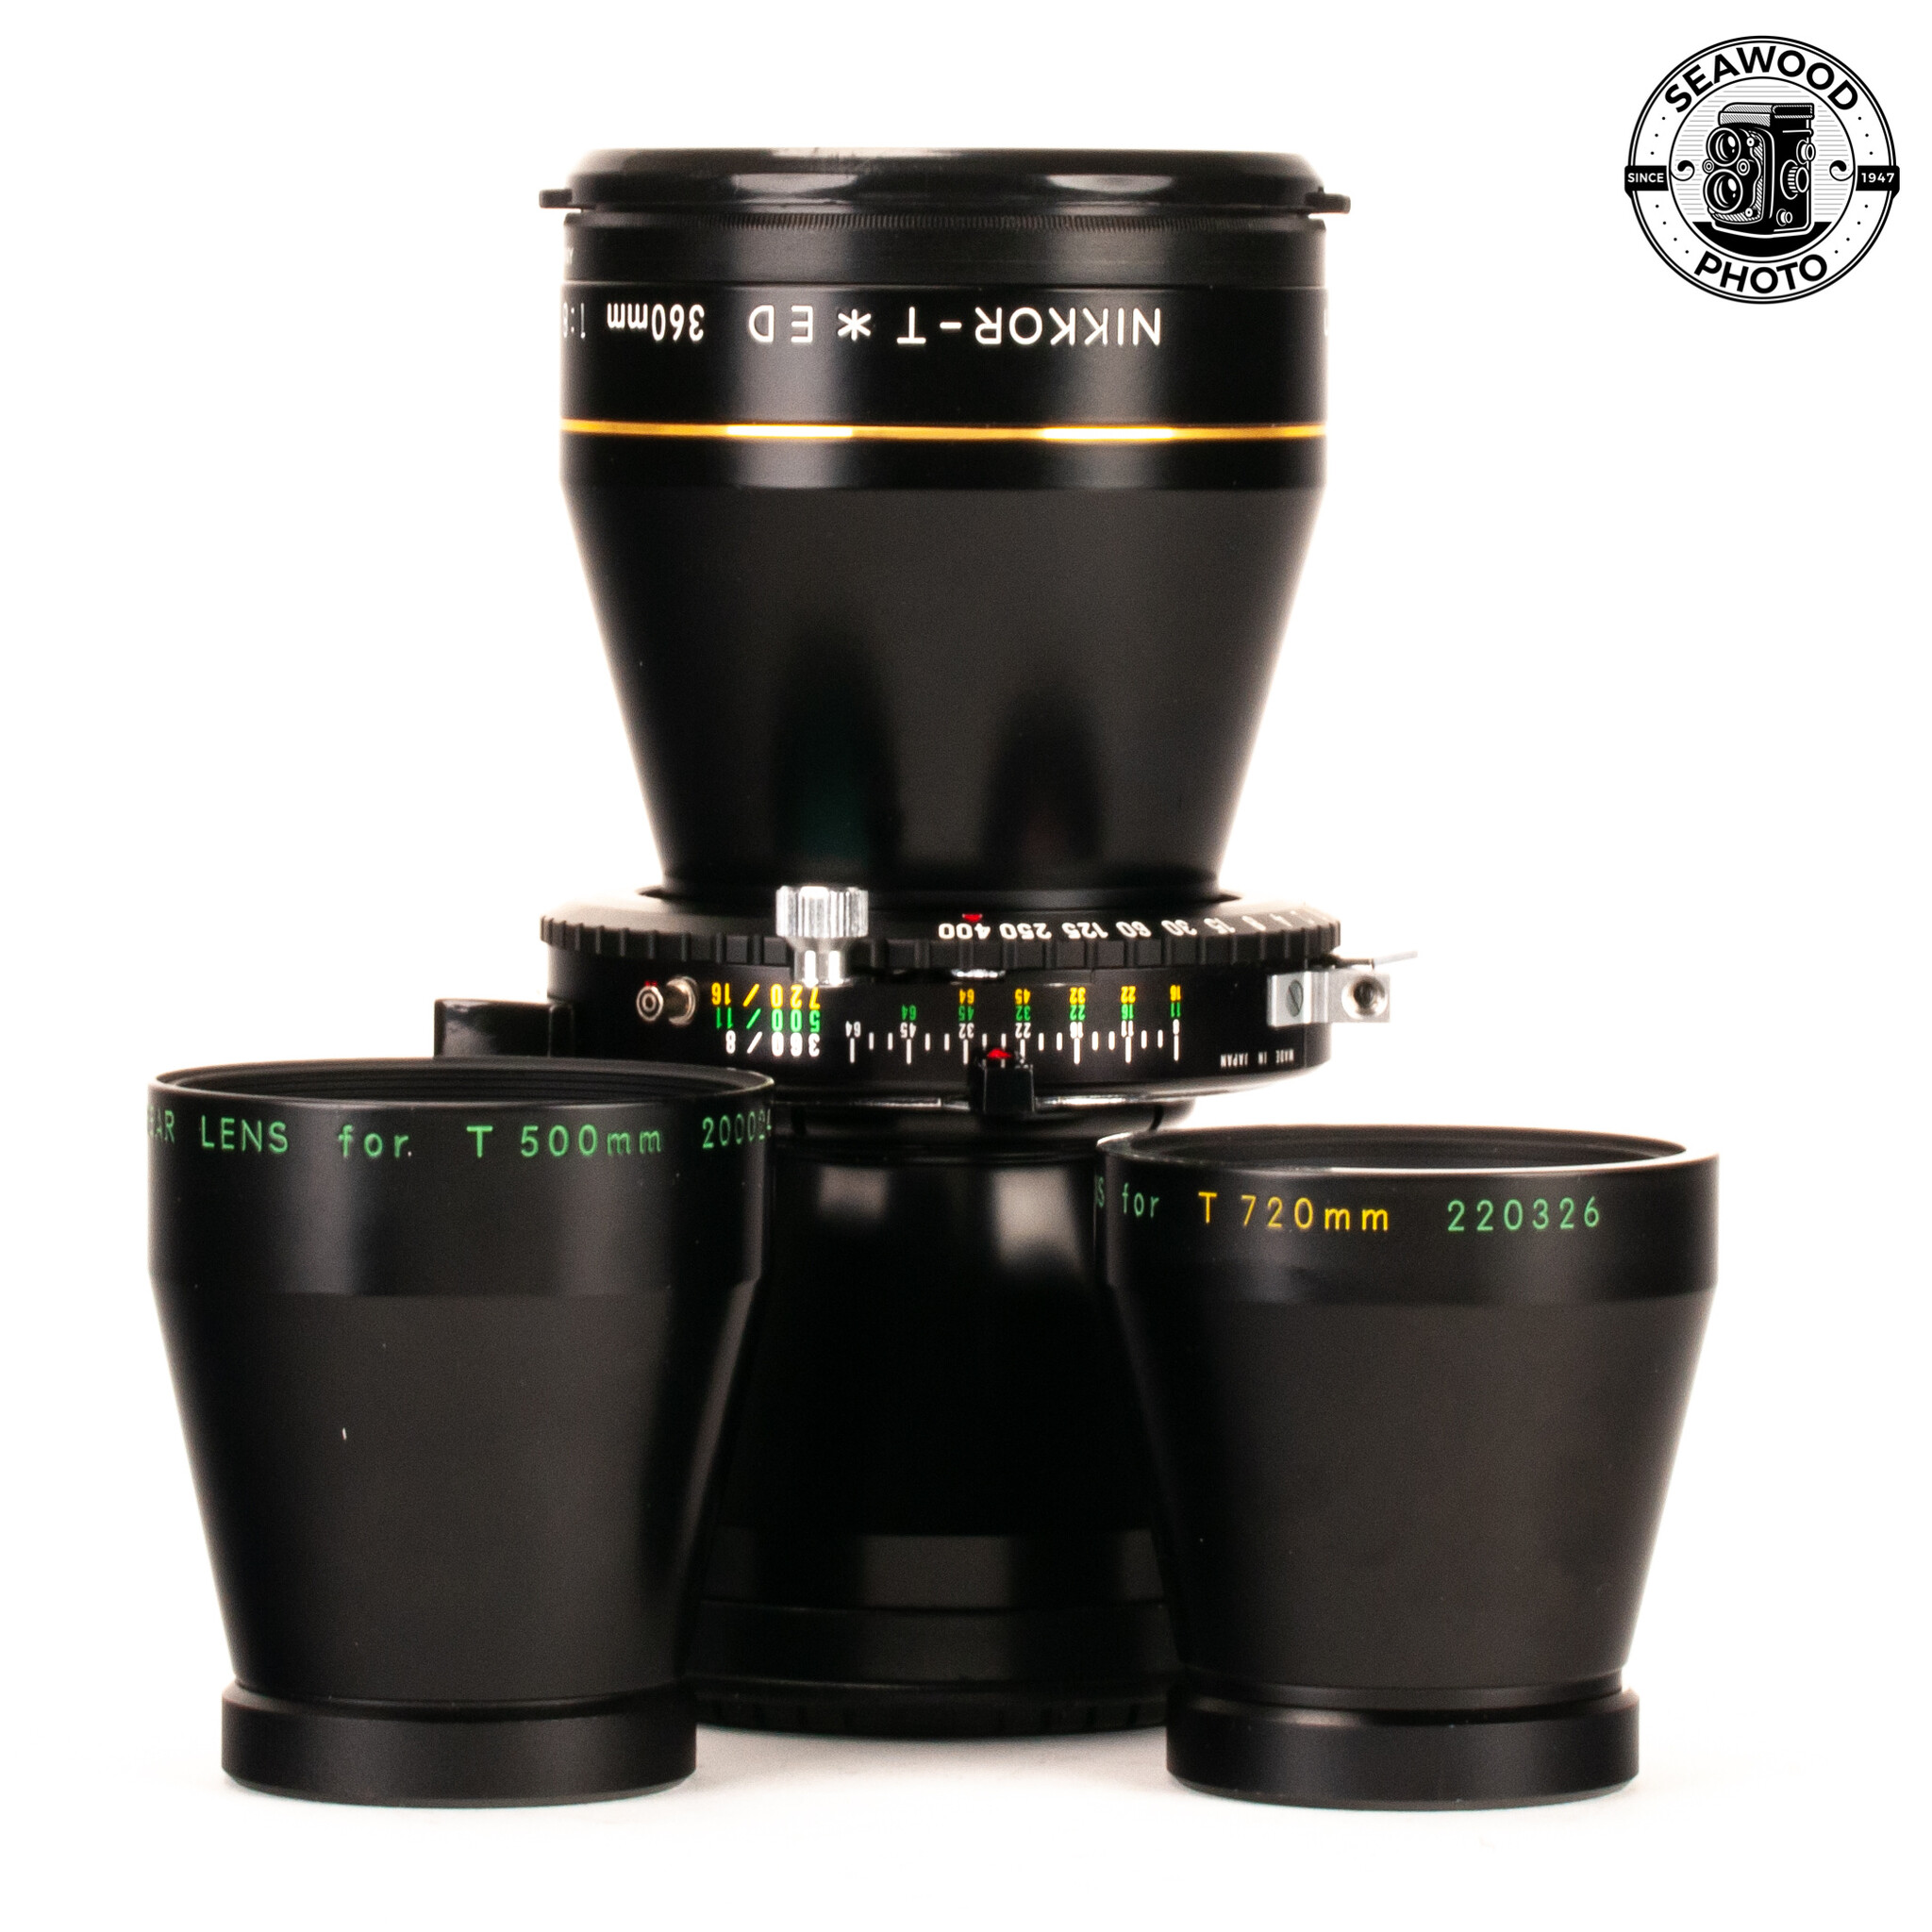 Nikon NIKKOR-T ED 360mm f/8, 500mm f/11, and 720mm f/16 Lens Set 